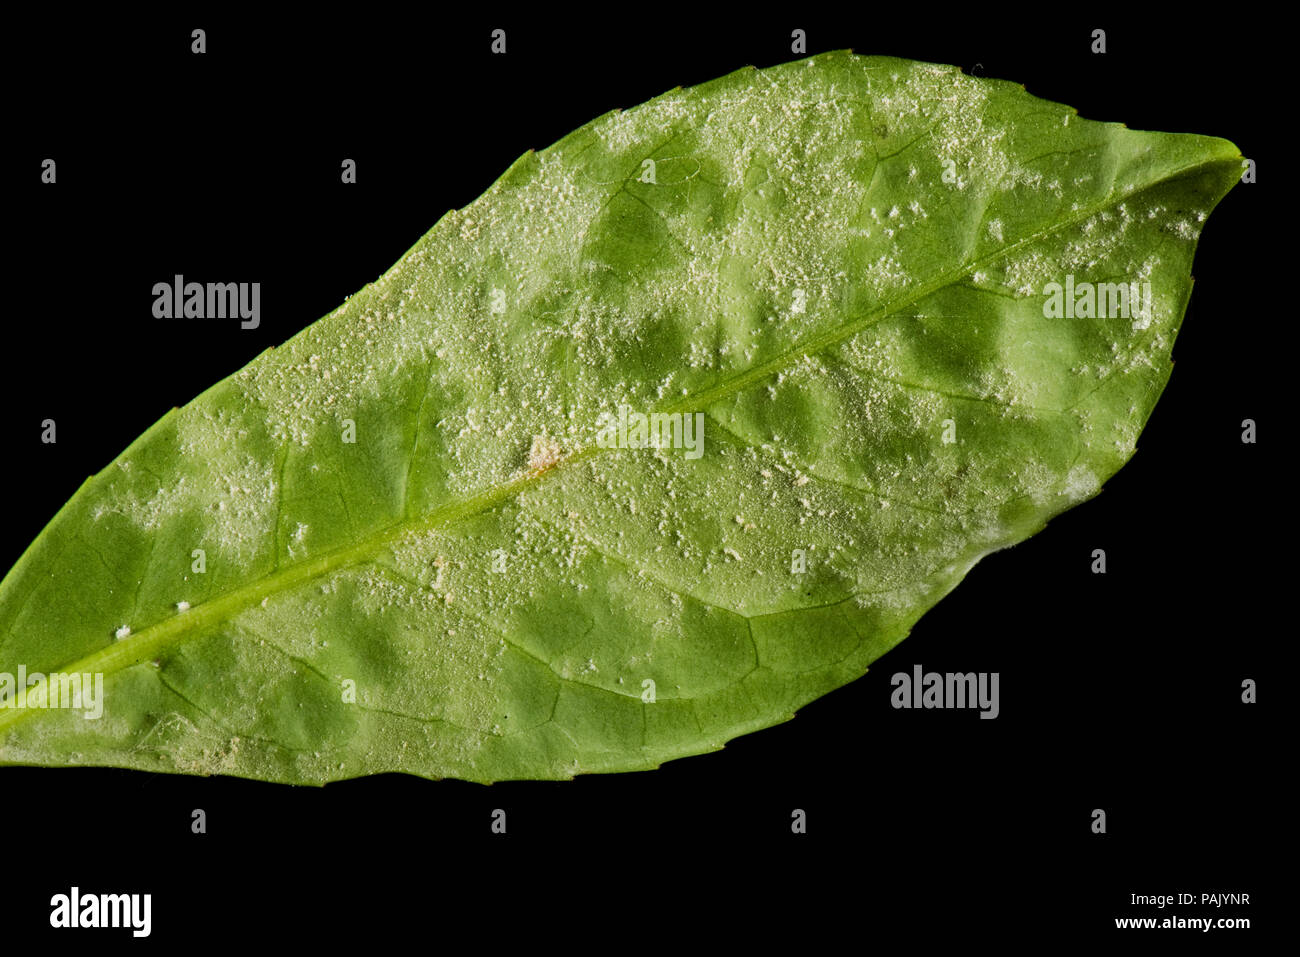 L'oïdium, Podosphaera pannosa ou tridactyla), sur la face inférieure des feuilles de laurier cerise dans un jardin d'une haie, Juillet Banque D'Images